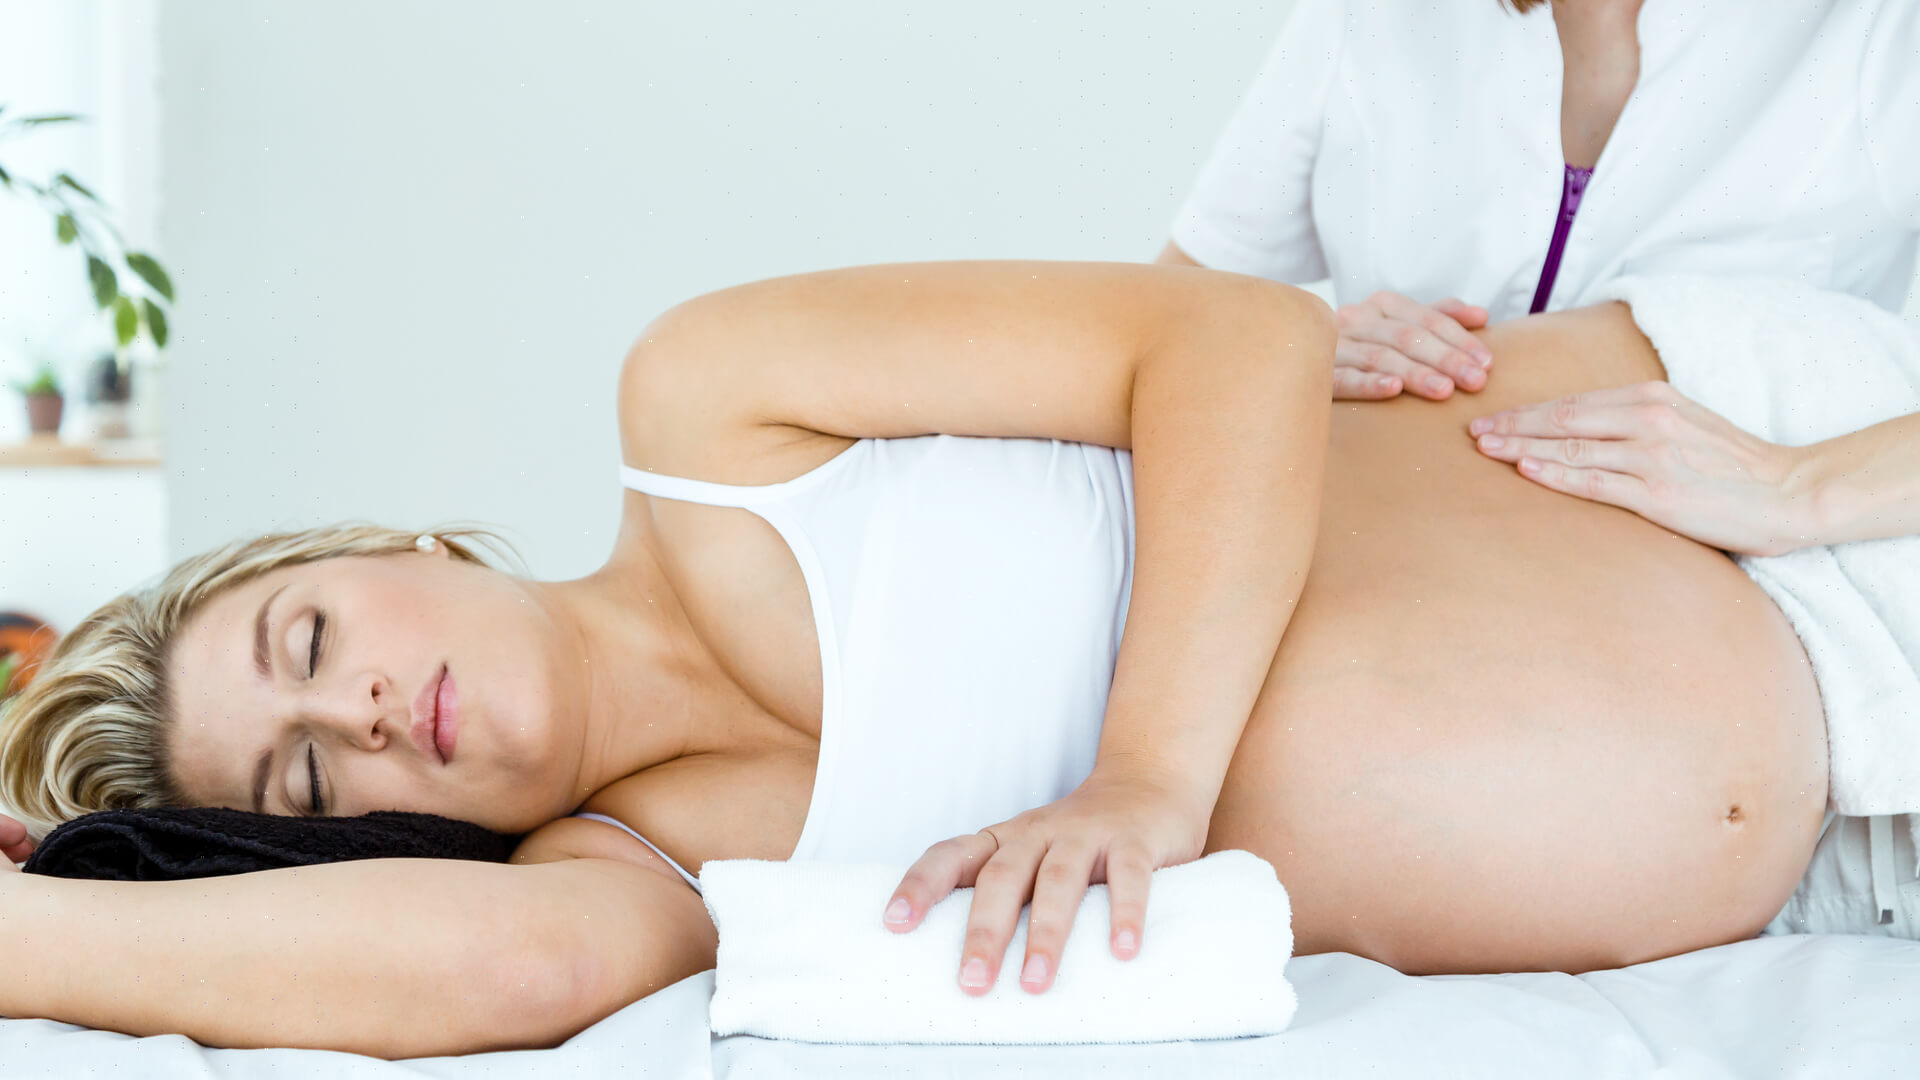 De sauna zwanger bezoeken; vanaf / tot wanneer welk trimester mag je gaan? - Reisliefde